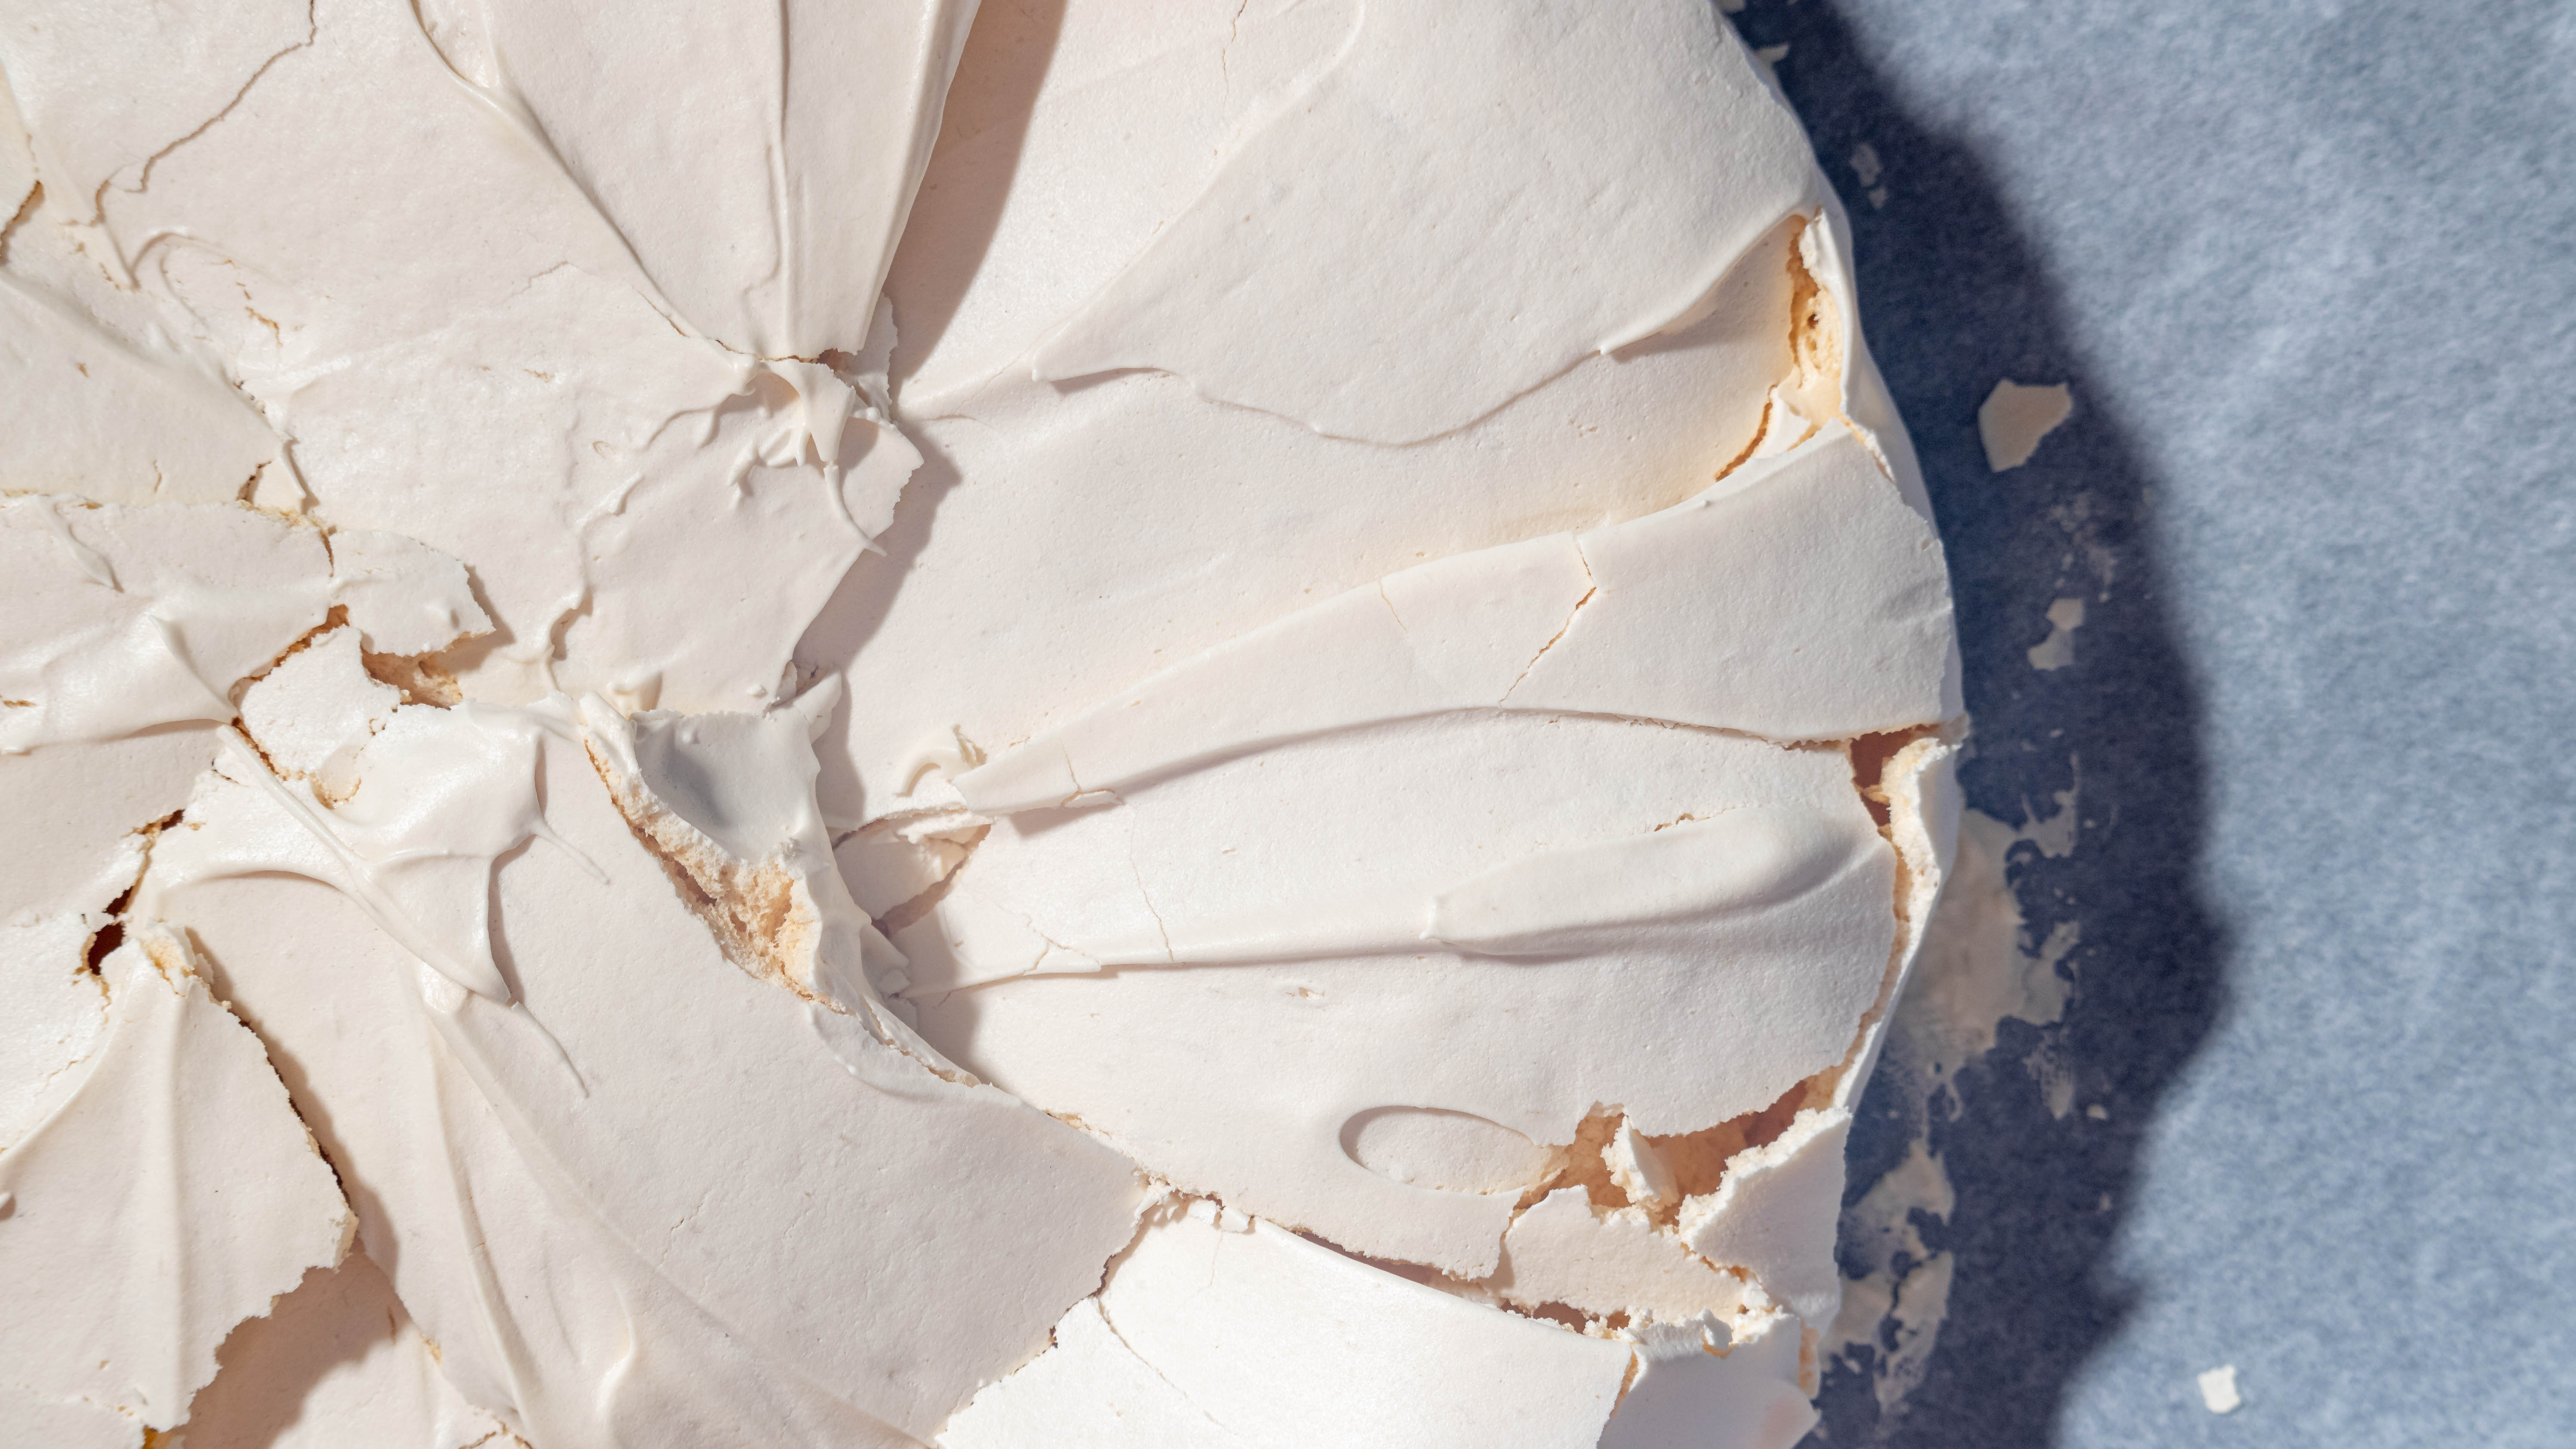 a cracked meringue